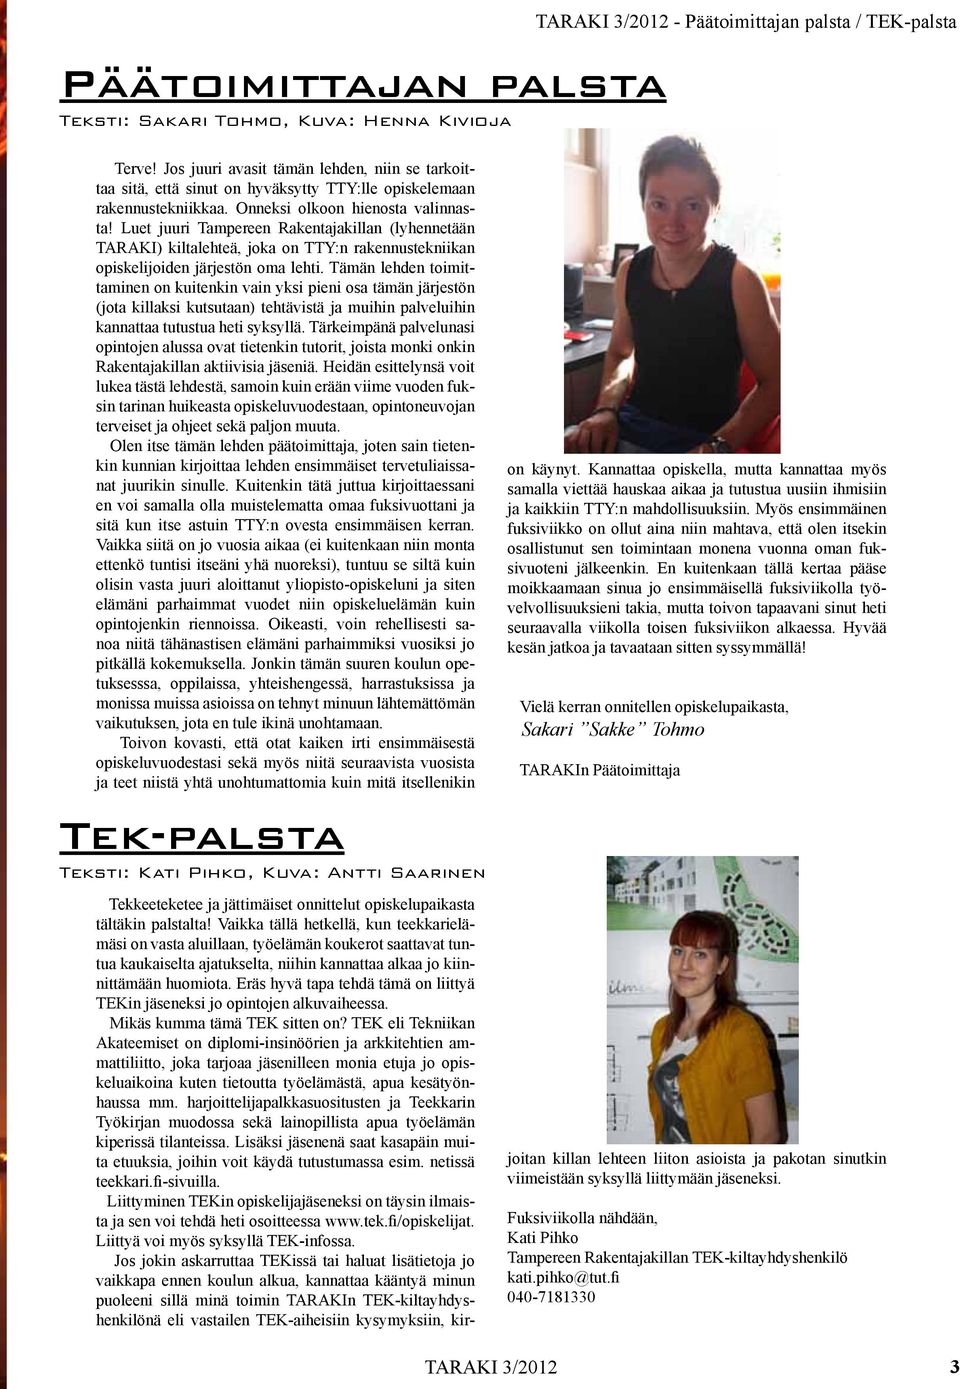 Luet juuri Tampereen Rakentajakillan (lyhennetään TARAKI) kiltalehteä, joka on TTY:n rakennustekniikan opiskelijoiden järjestön oma lehti.